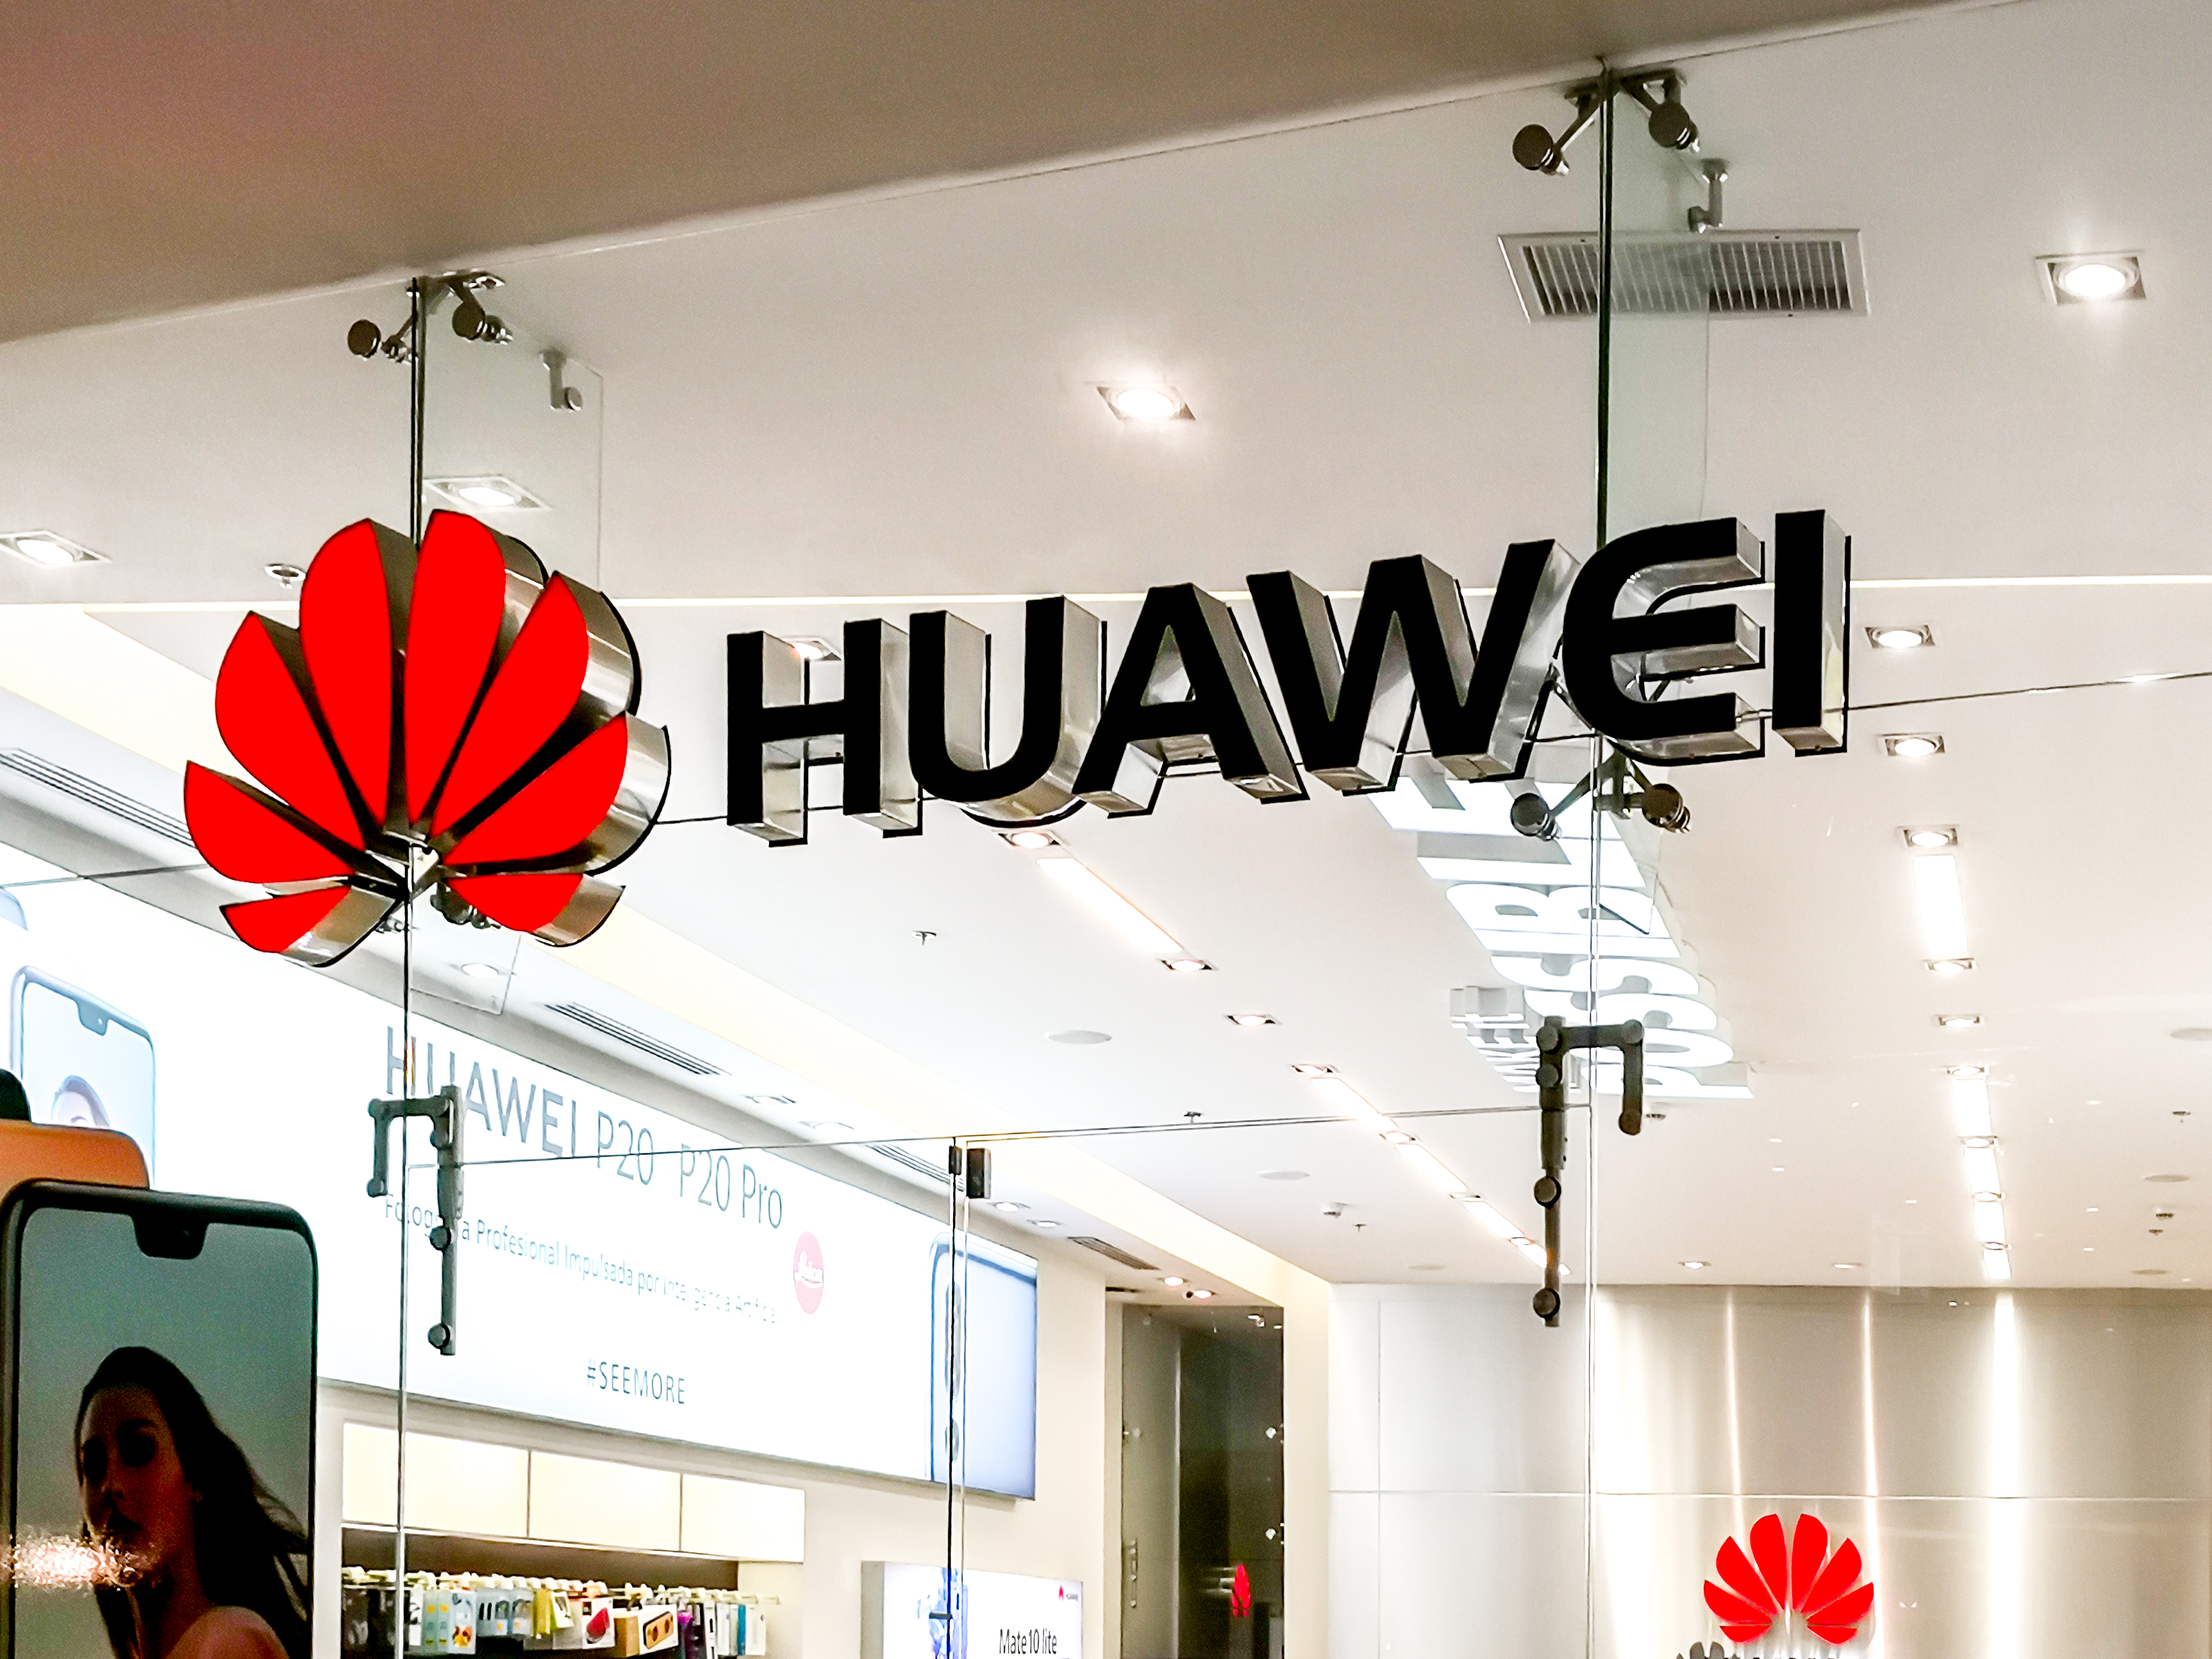 Китайская Huawei перевезла часть сотрудников из России в Казахстан и Узбекистан